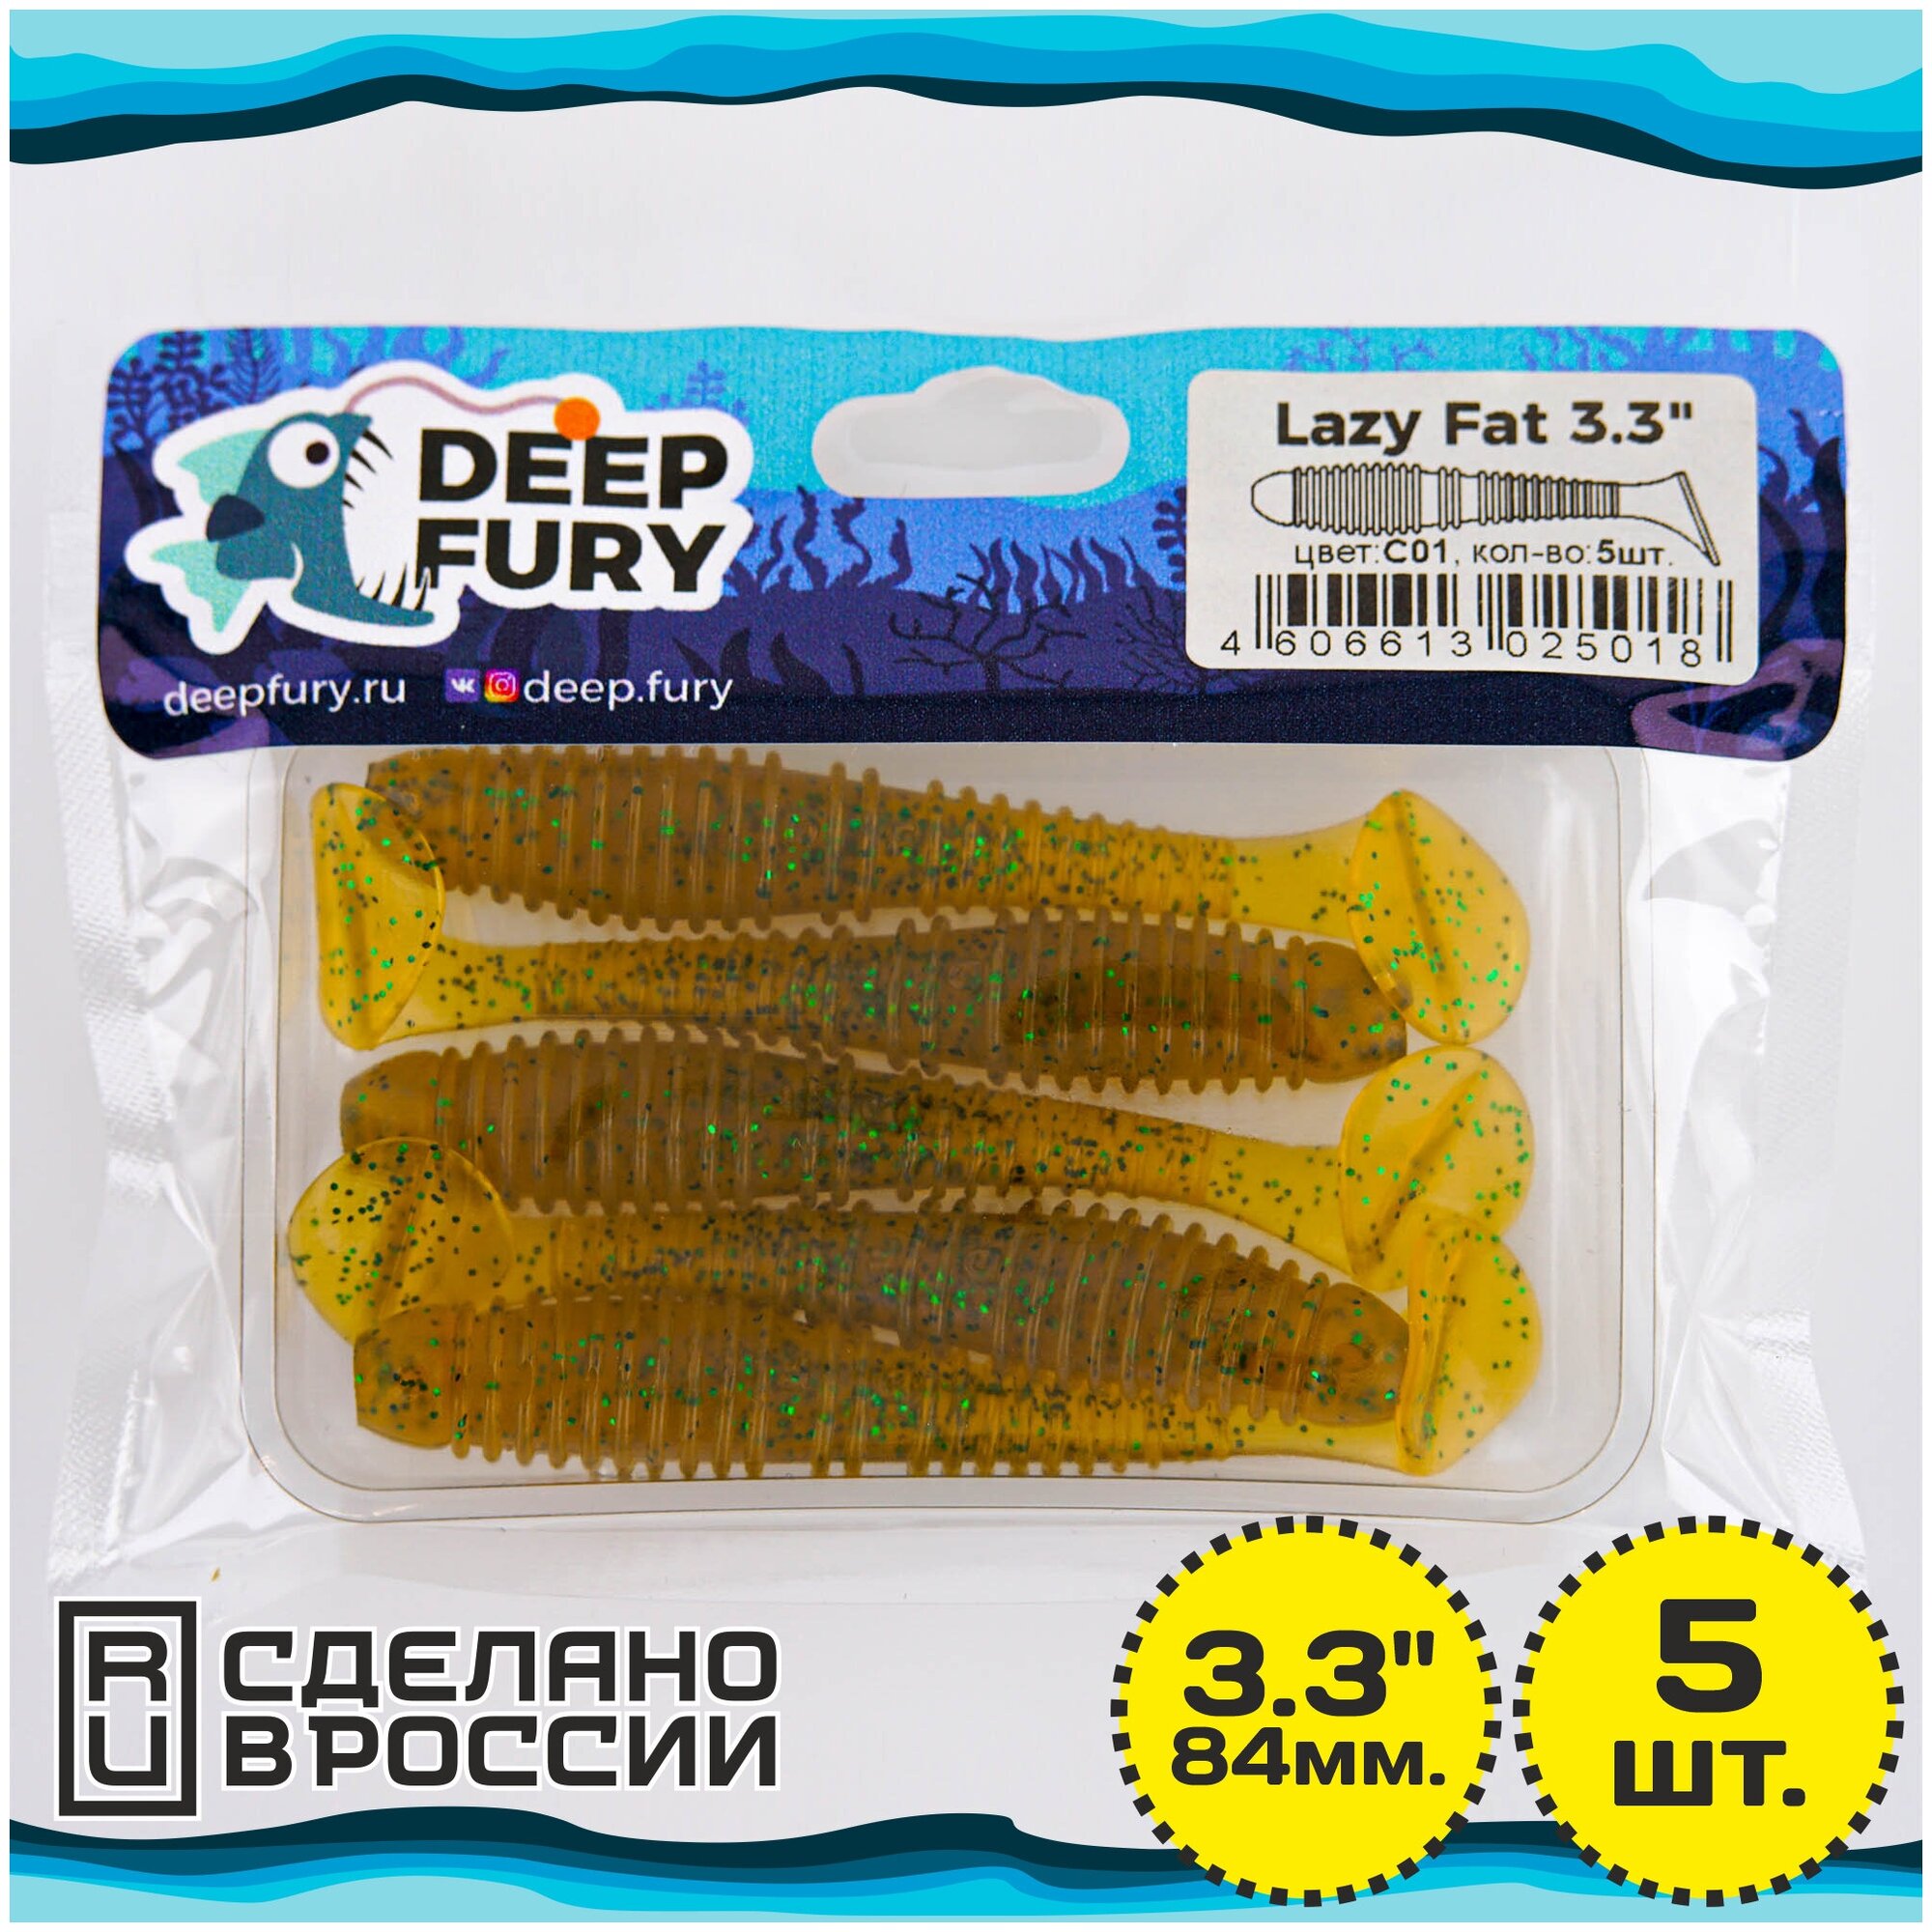   Deep Fury Lazy Fat 3.3" (84 .)  c01